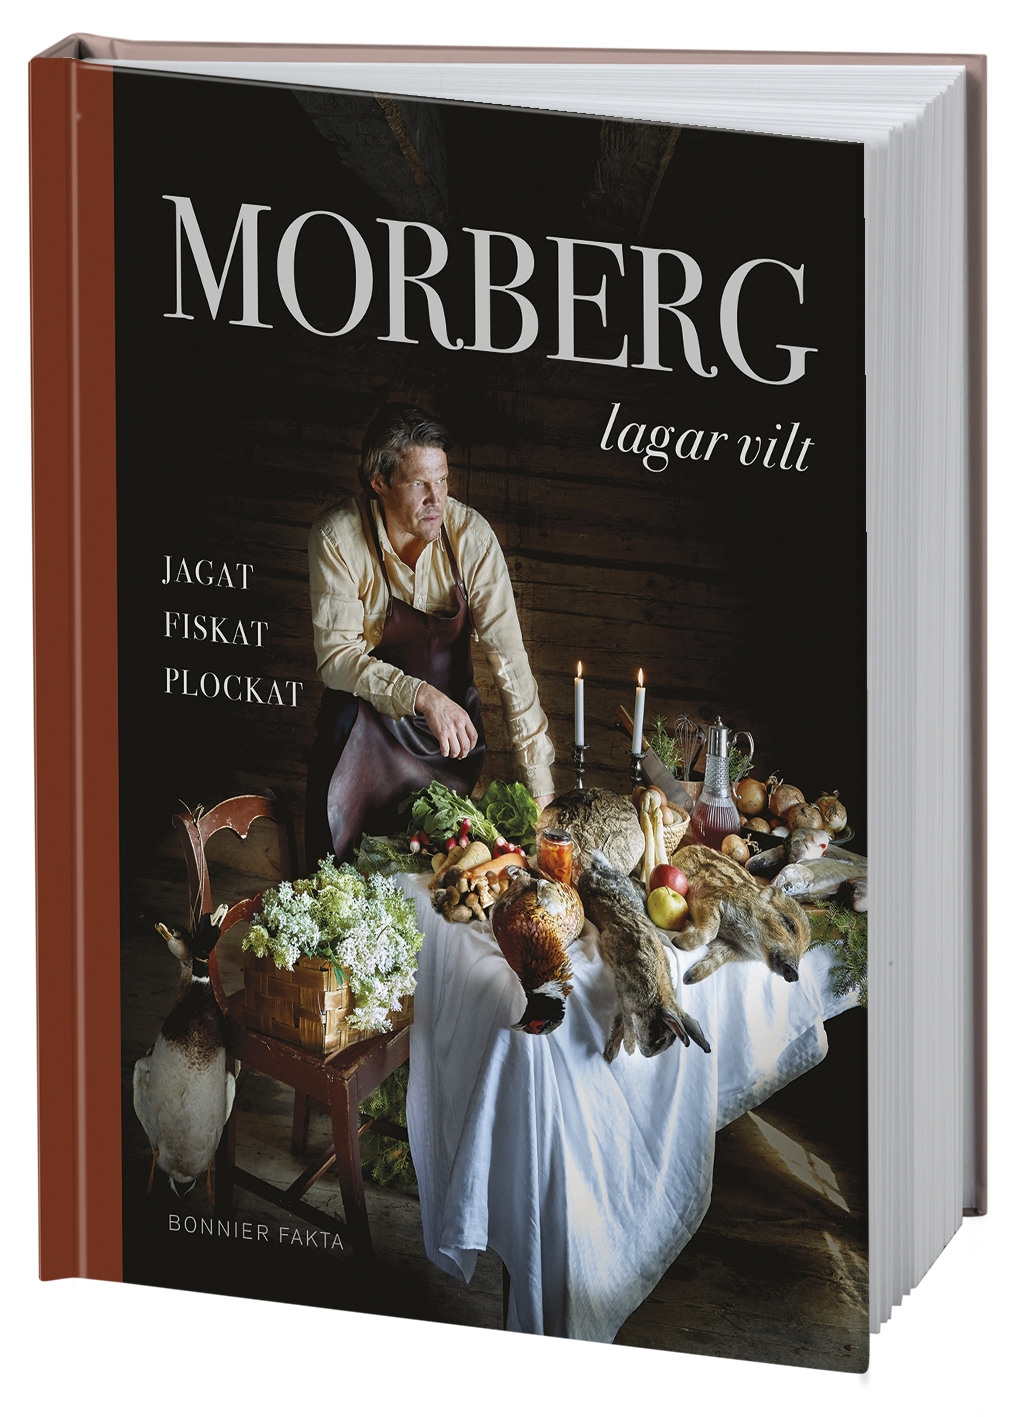 Morberg Lagar Vilt - Jagat, Fiskat, Plockat